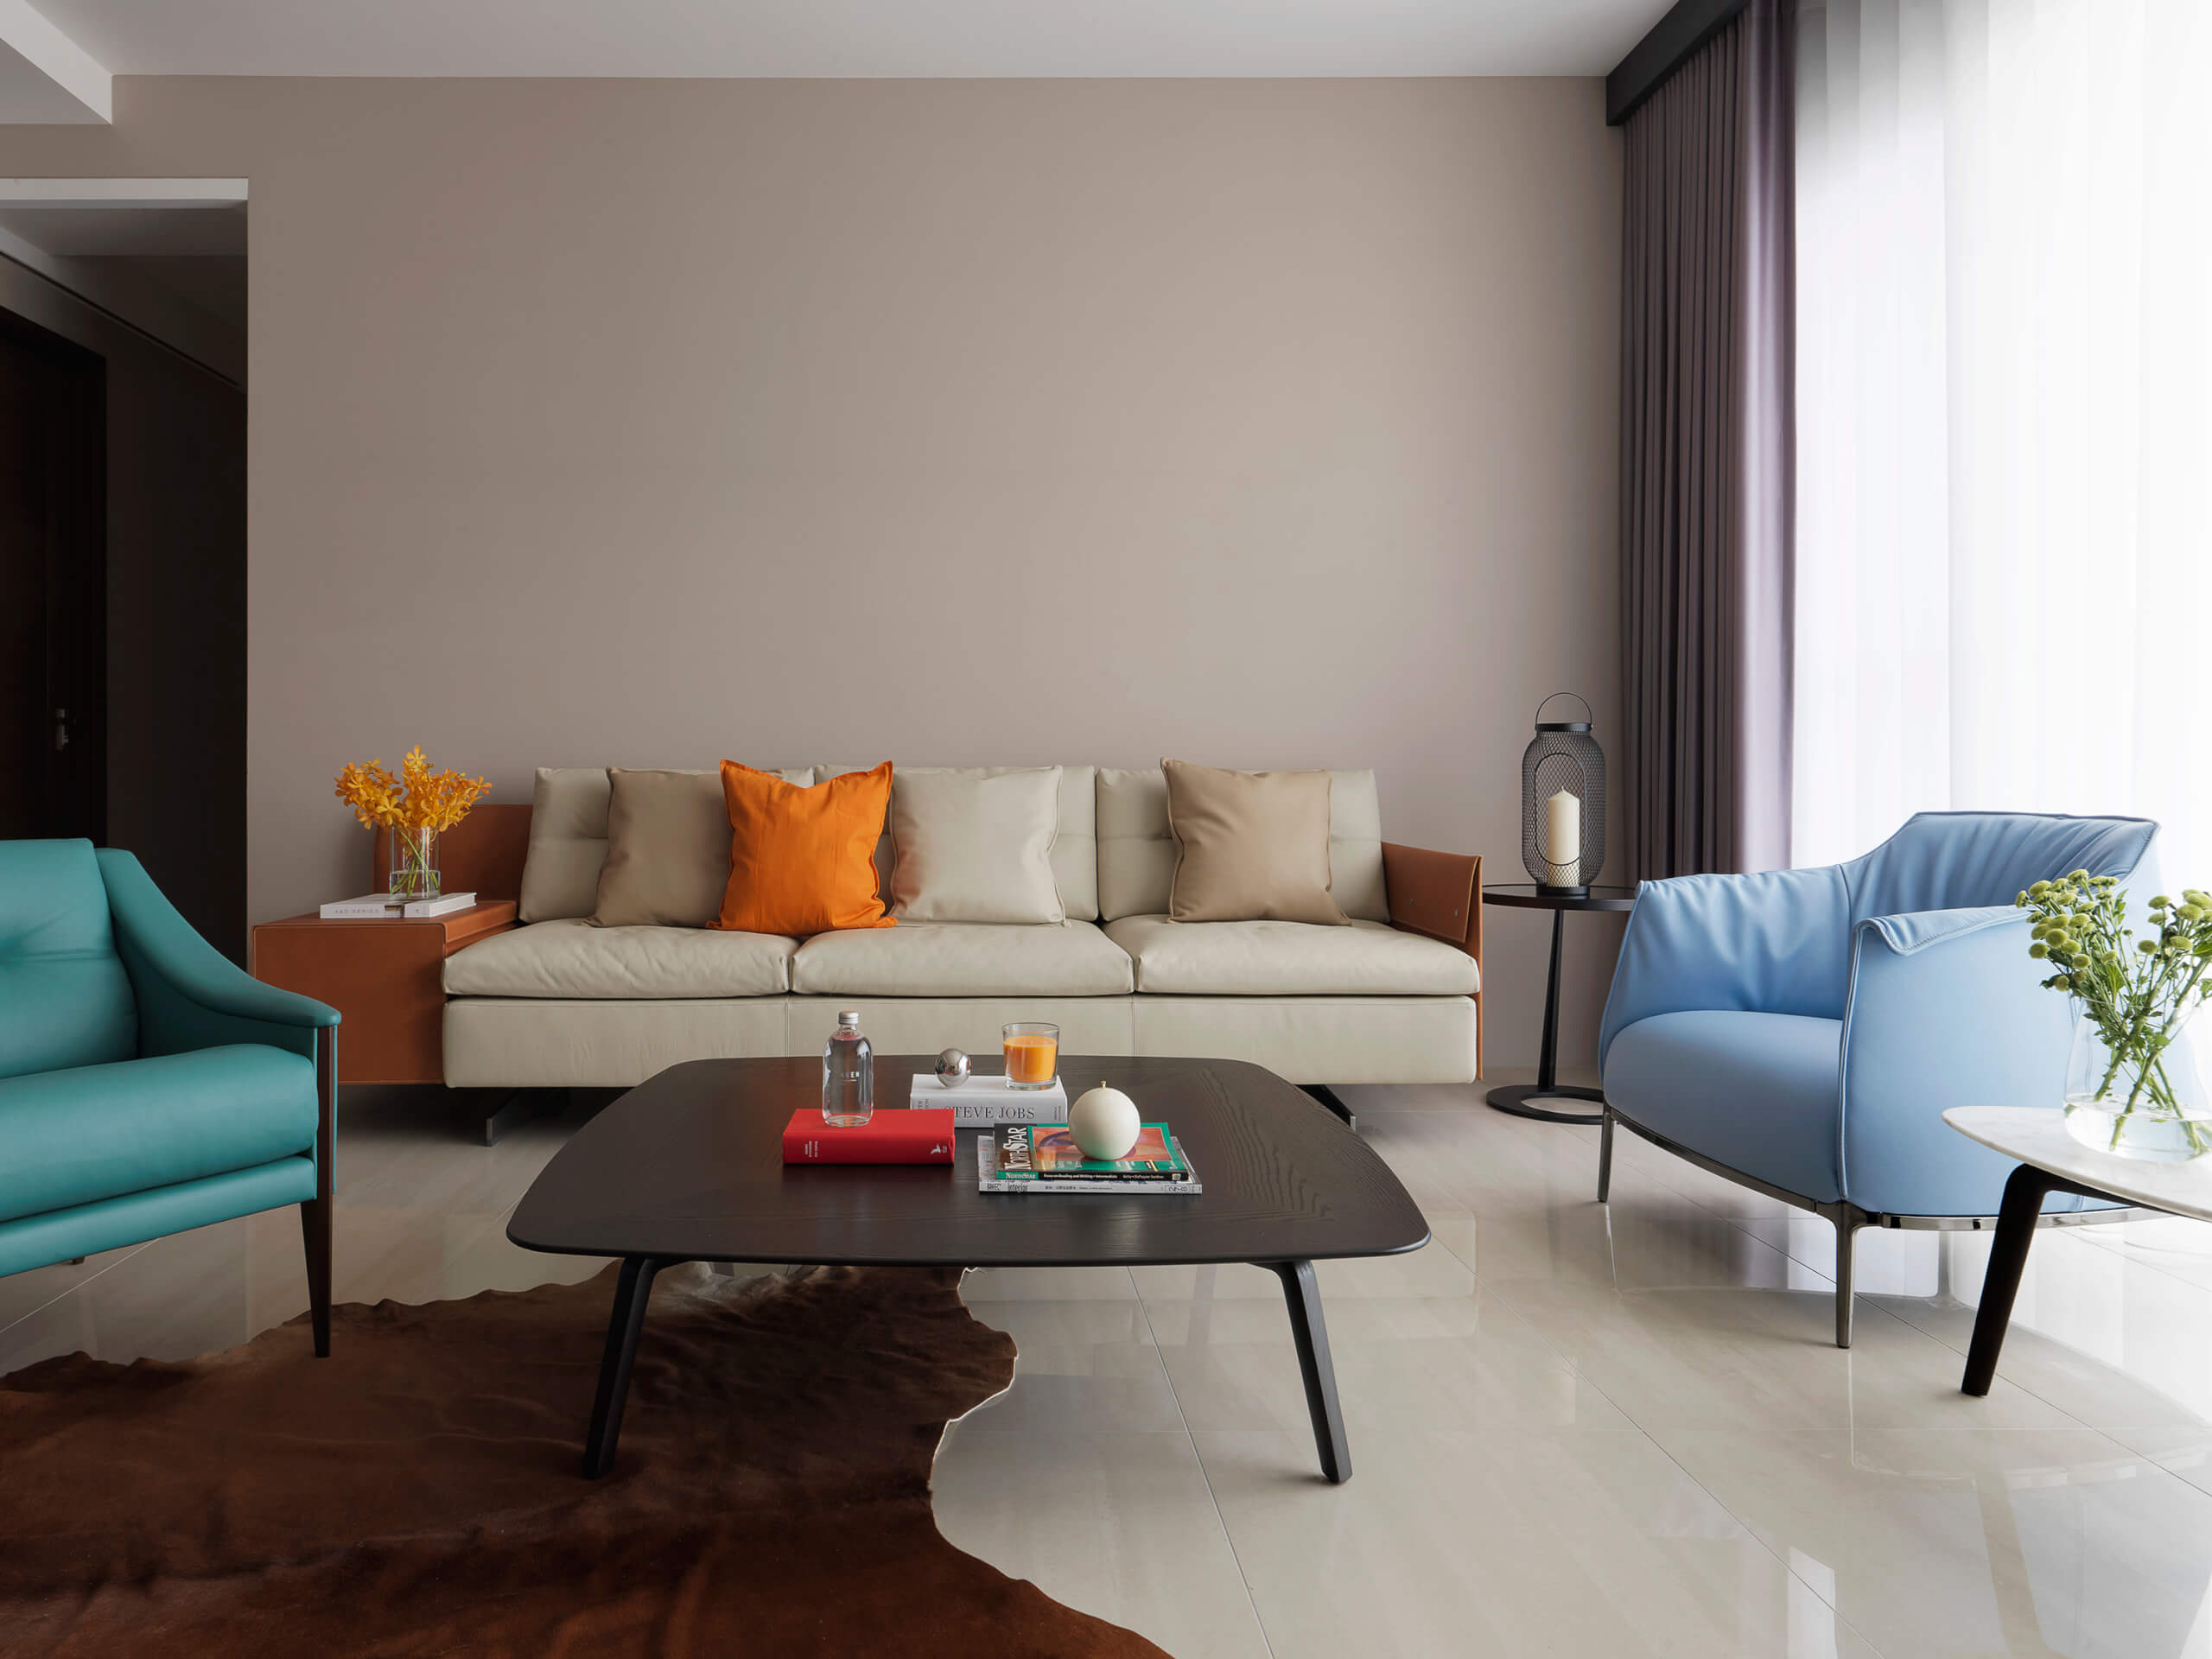 90平米装修,三居室装修,15-20万装修,现代简约风格,客厅,沙发,咖啡色